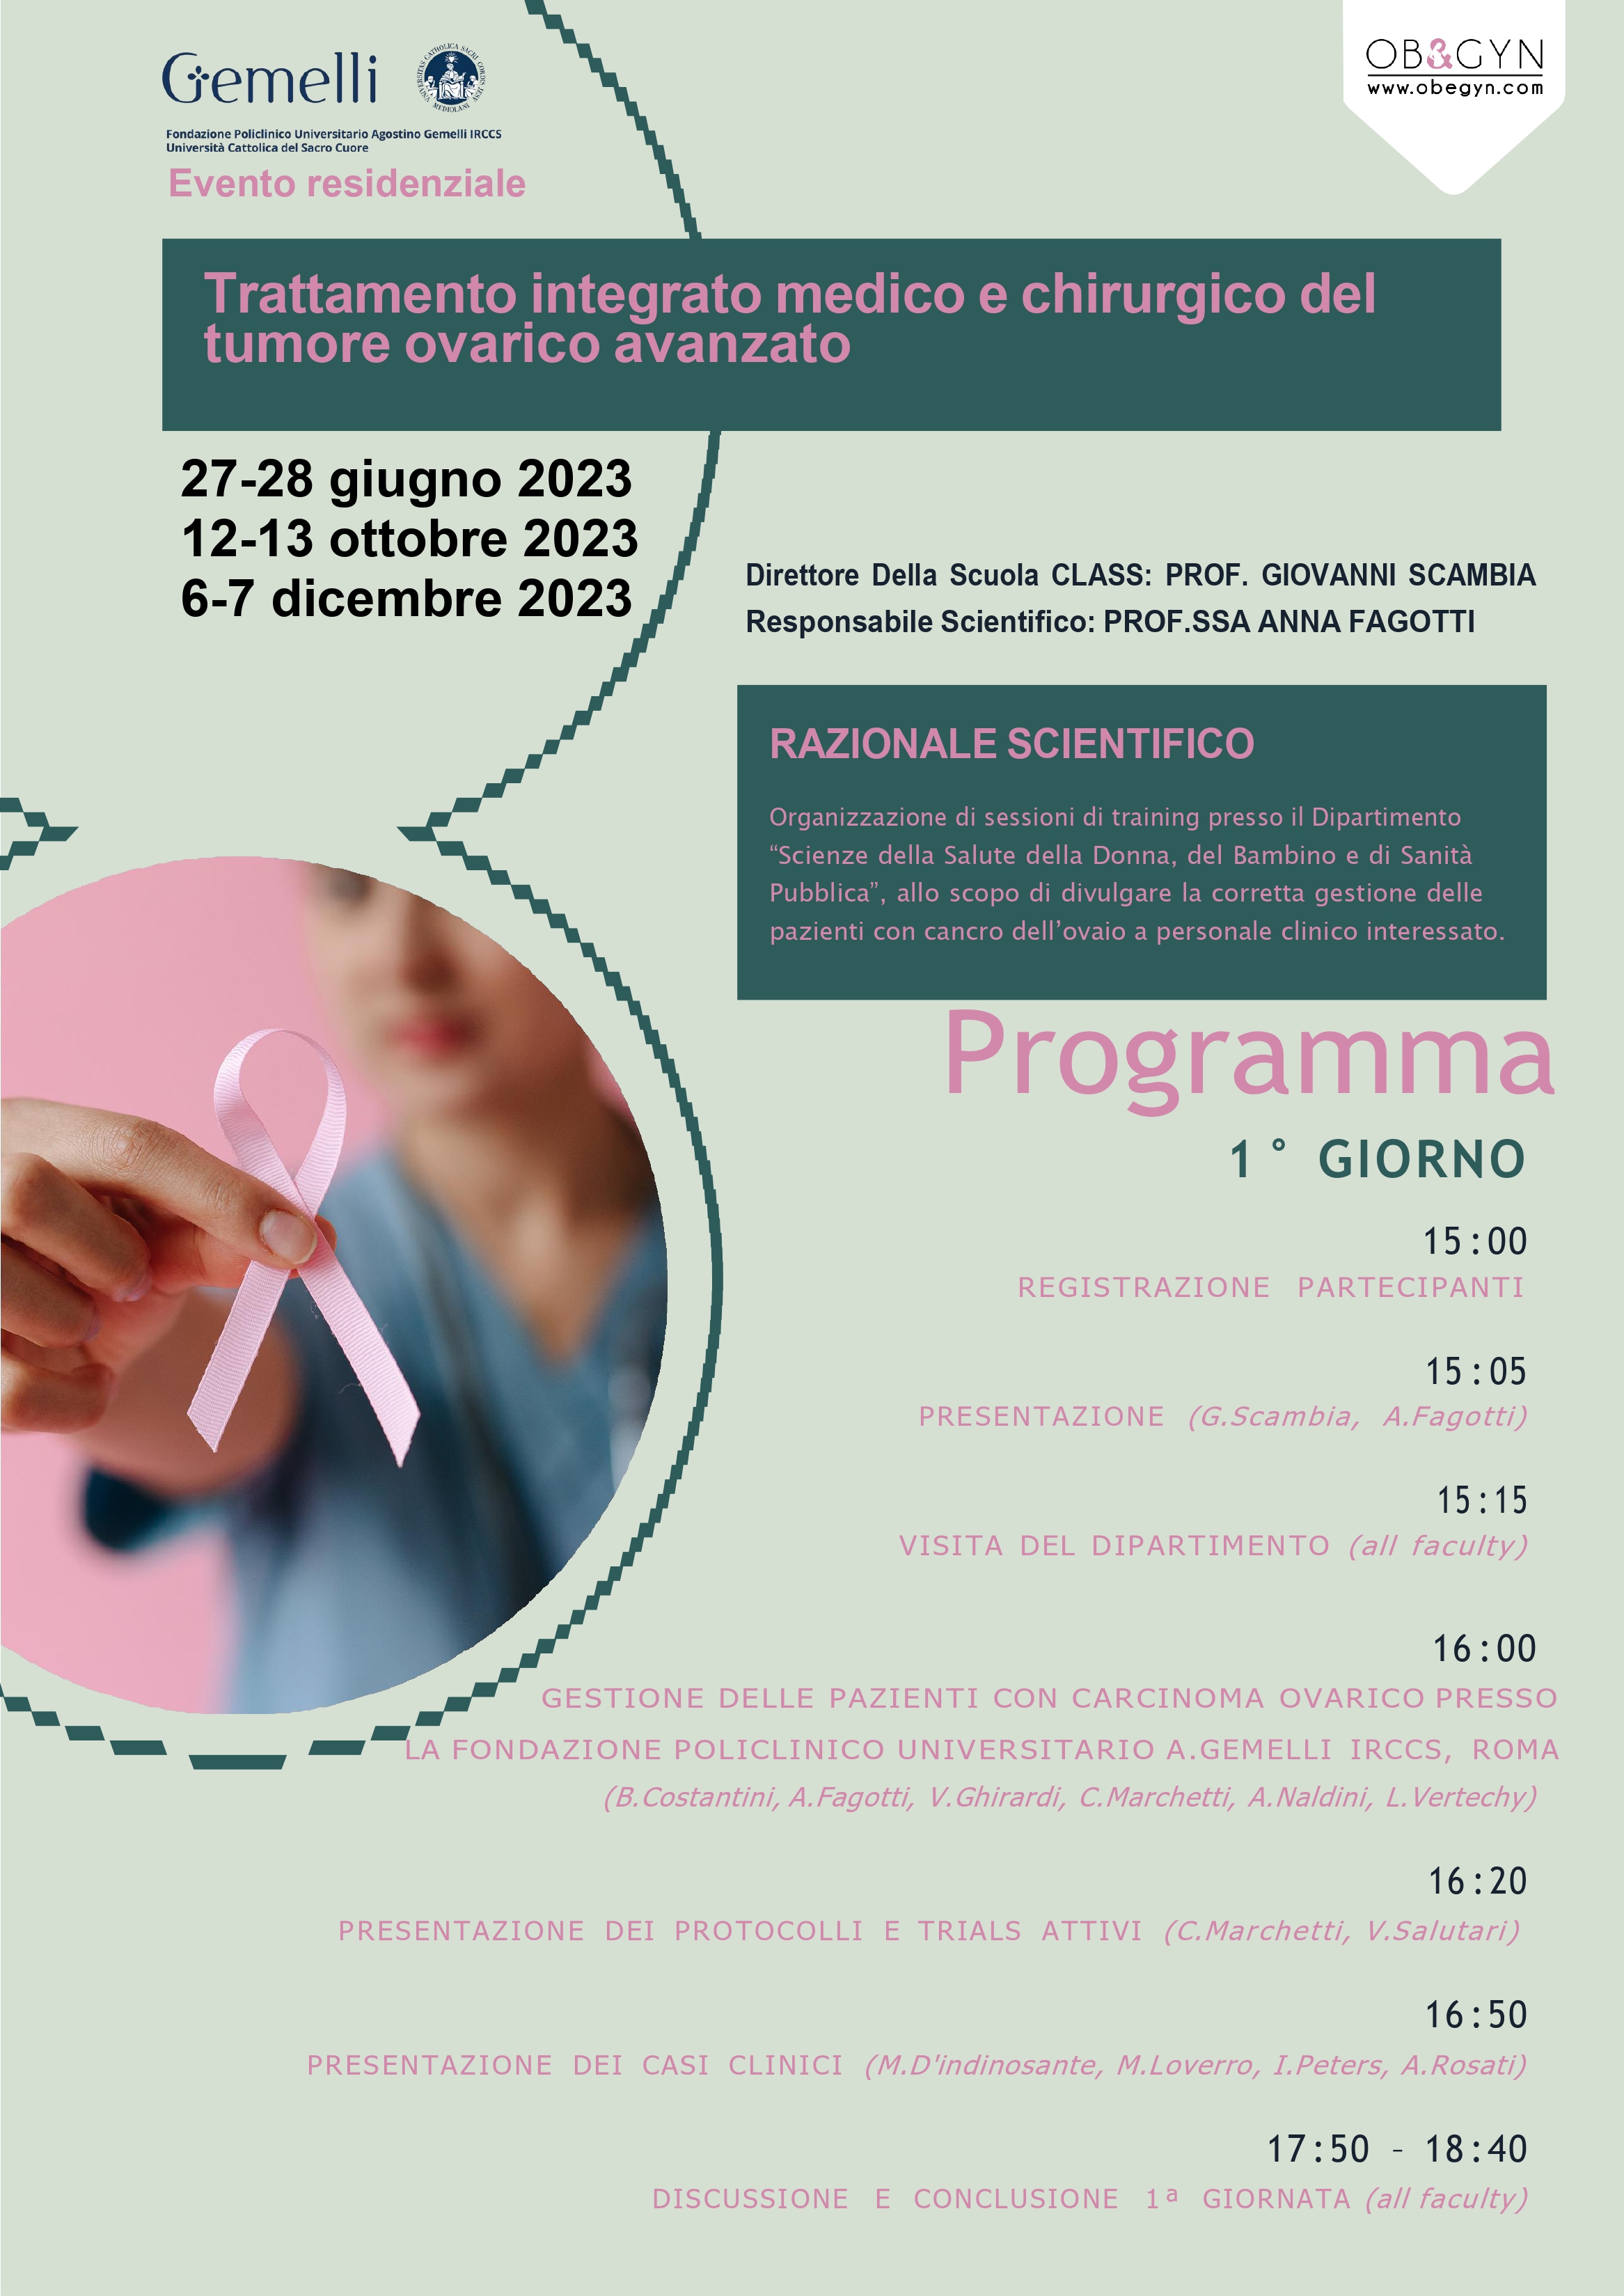 Programma Trattamento integrato medico e chirurgico del tumore ovarico avanzato - giugno 2023